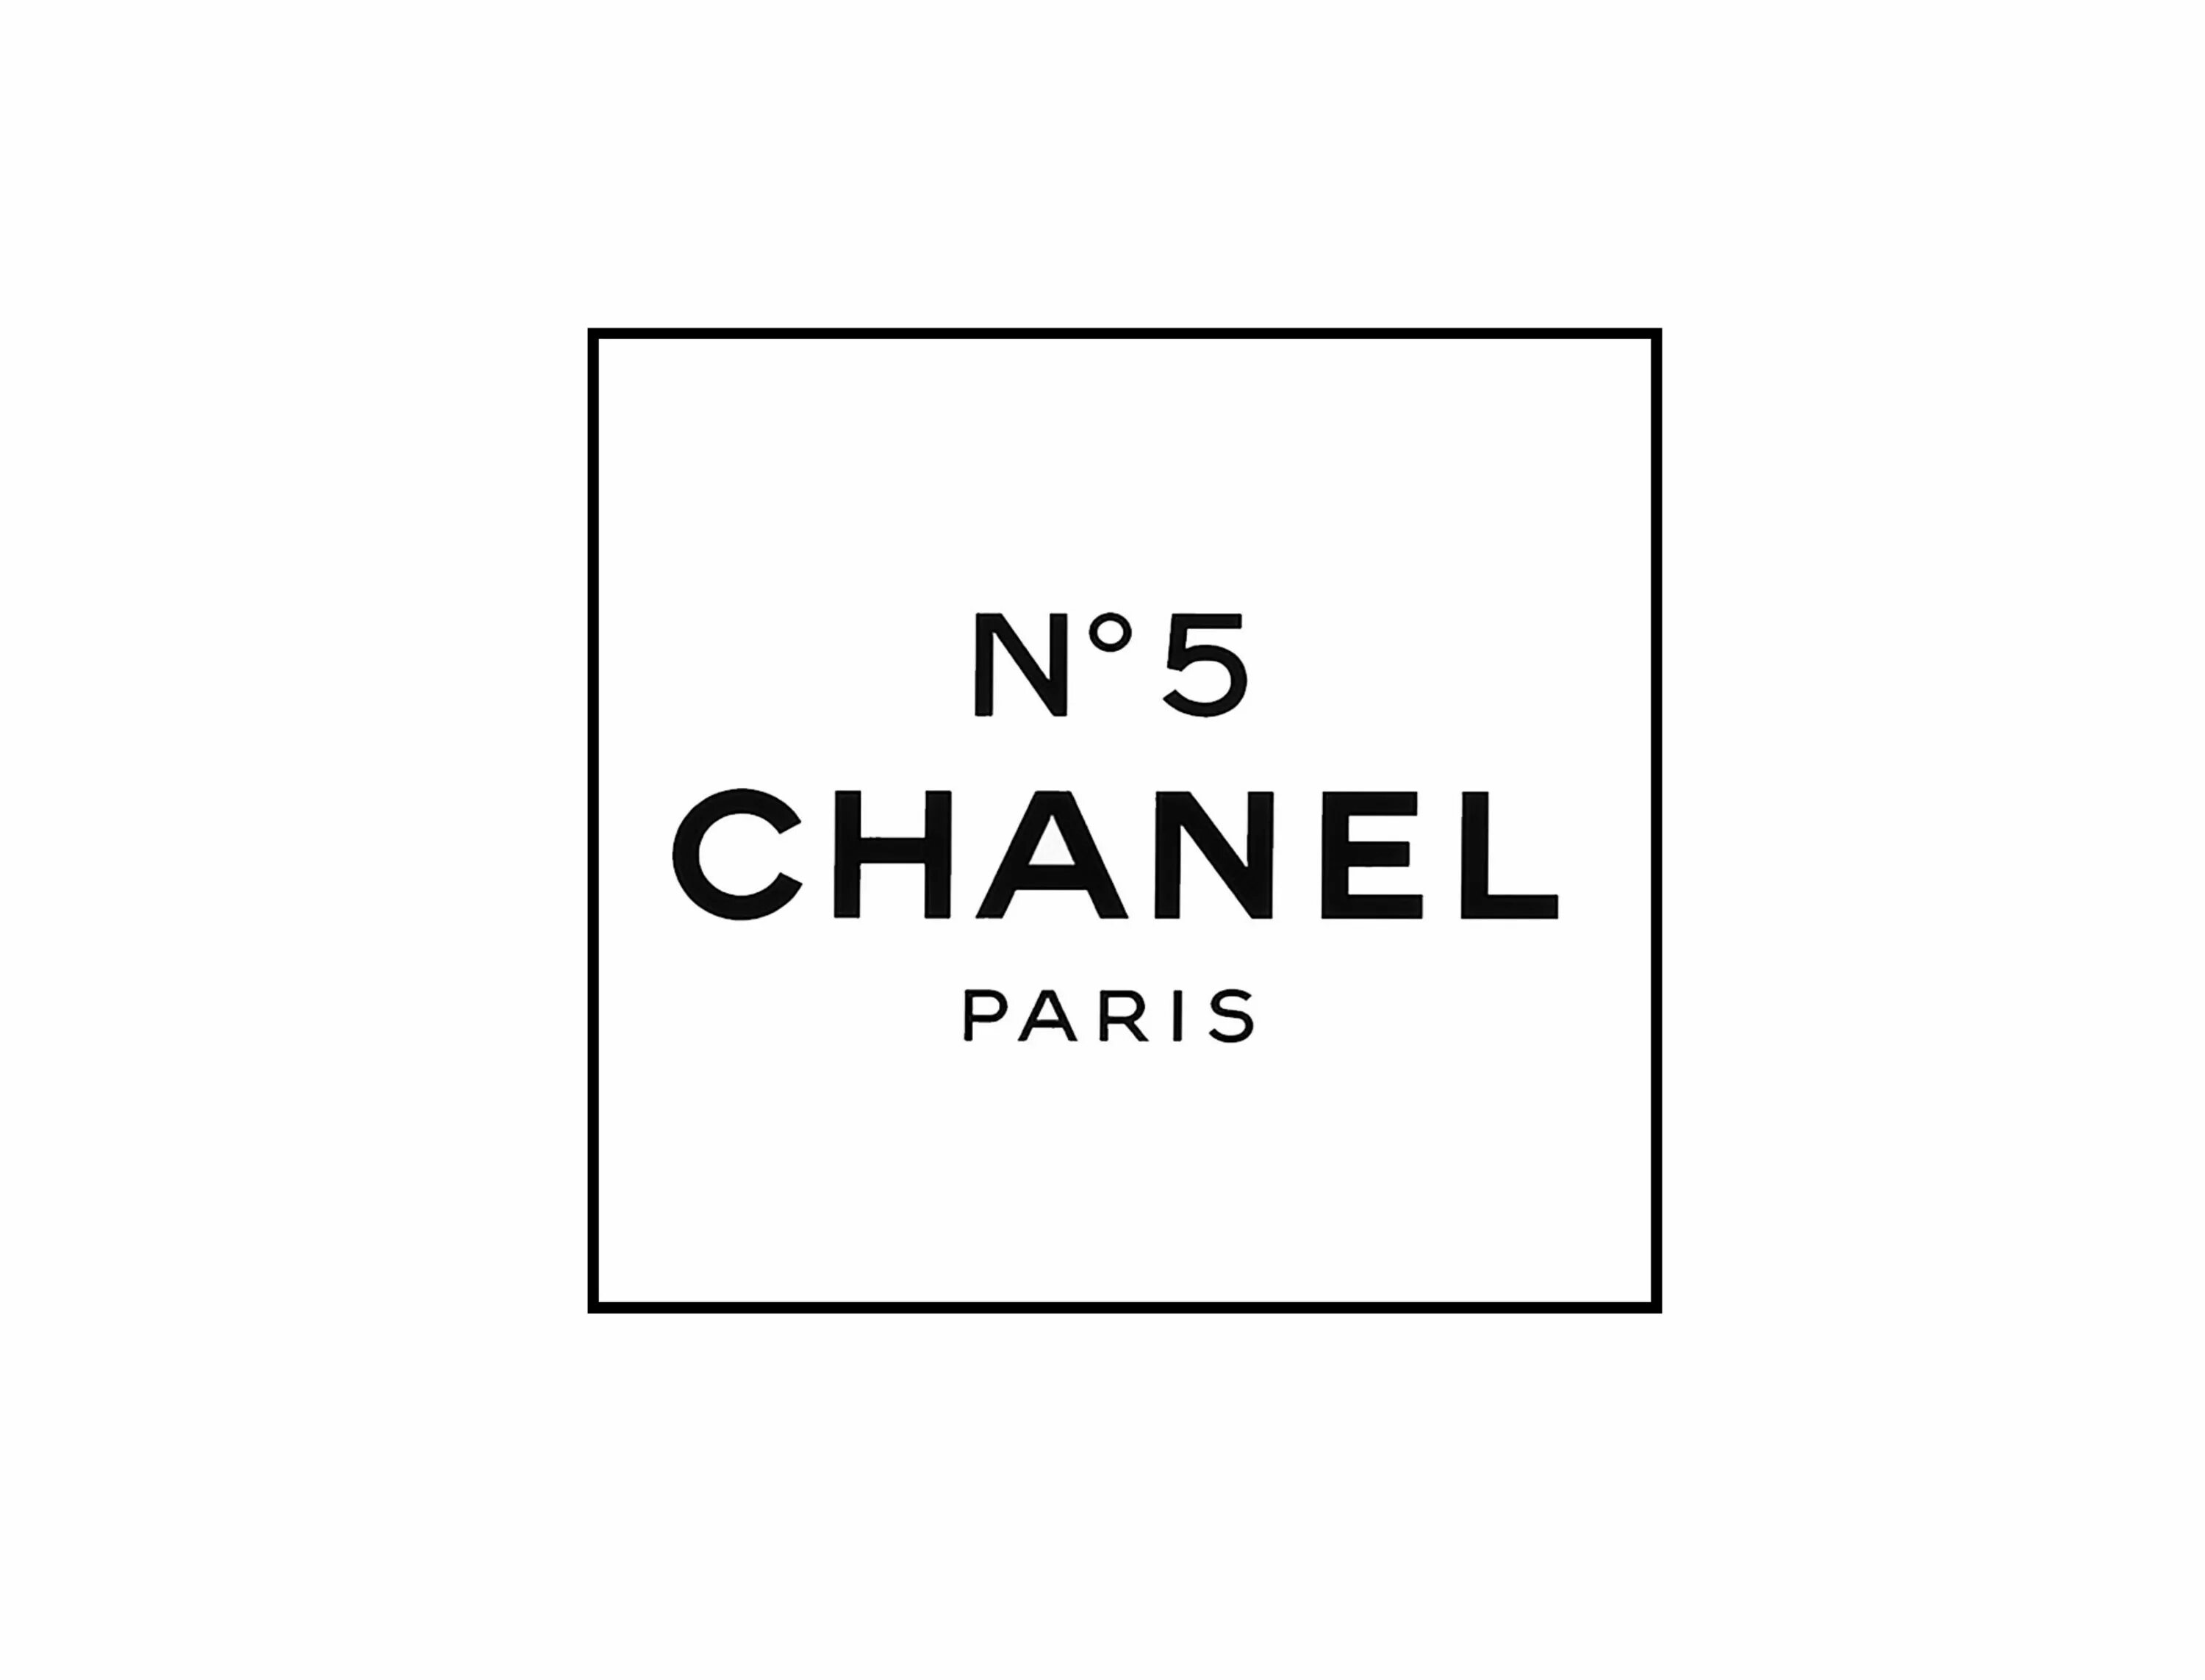 Этикетка на духах. Шанель 5 логотип. Этикетка духов Шанель номер 5. Chanel Paris №5. Шанель 5 этикетка.